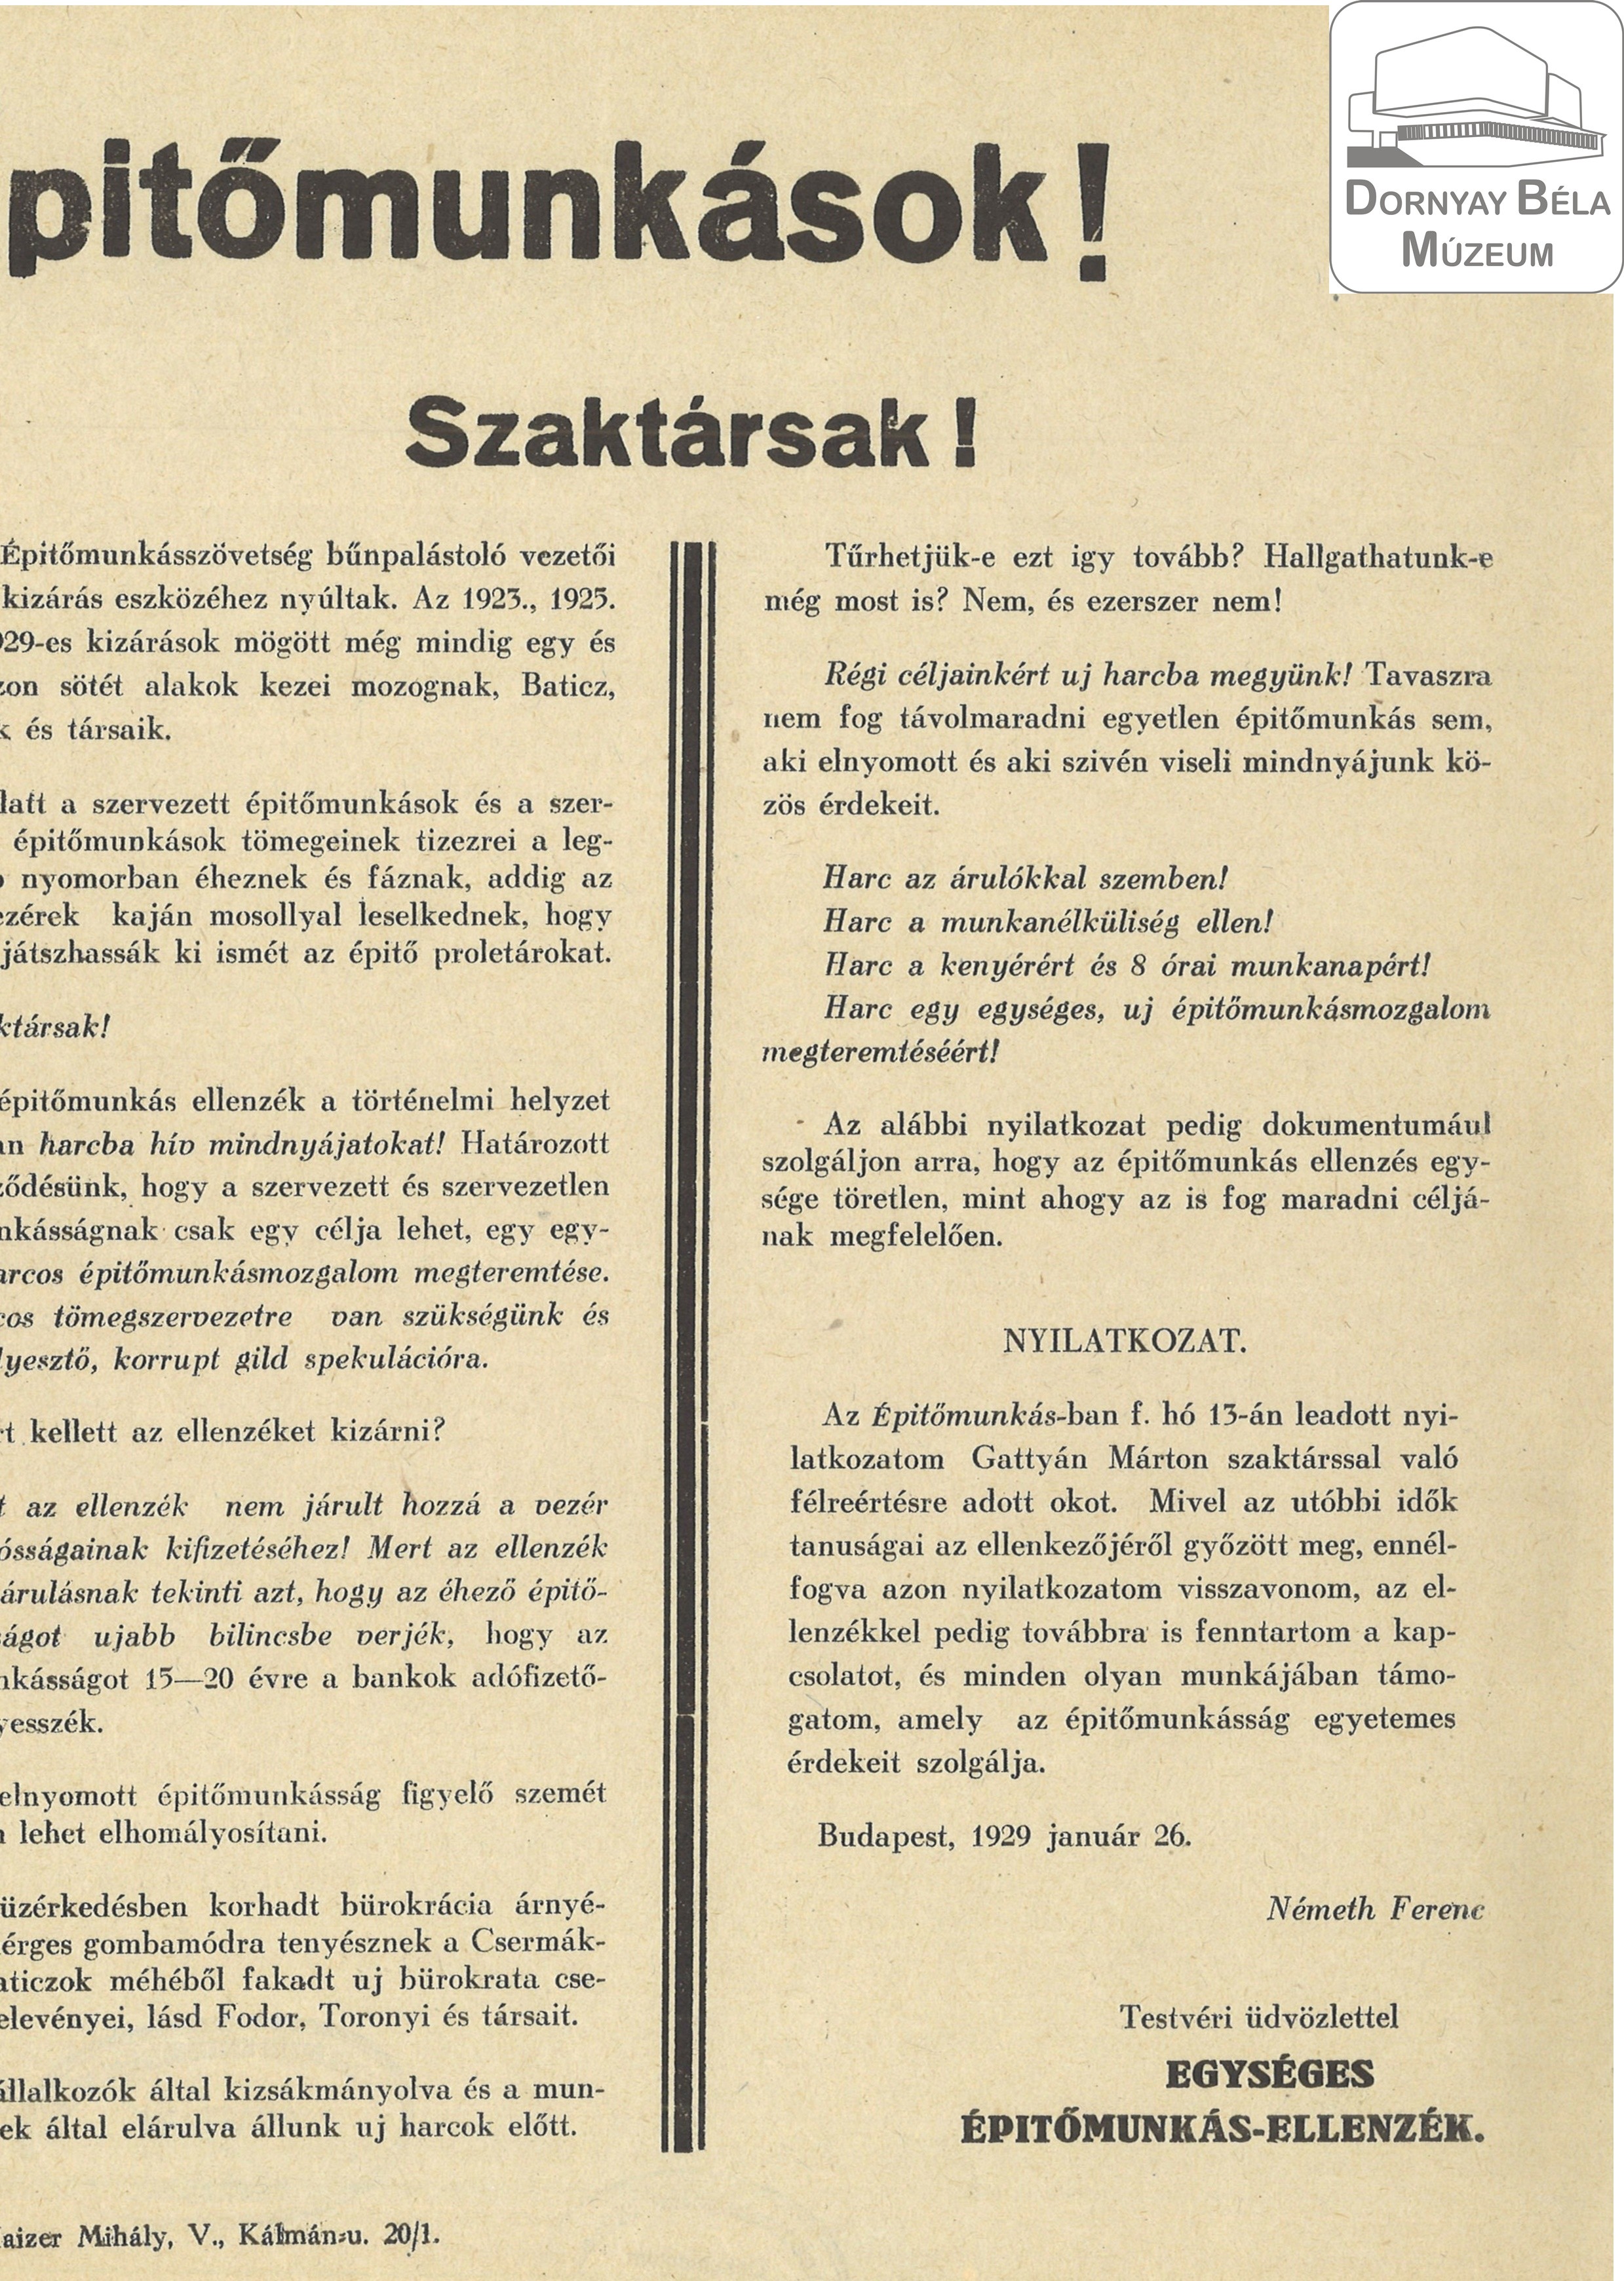 Az Egységes Építőmunkás-ellenzék felhívása (Dornyay Béla Múzeum, Salgótarján CC BY-NC-SA)